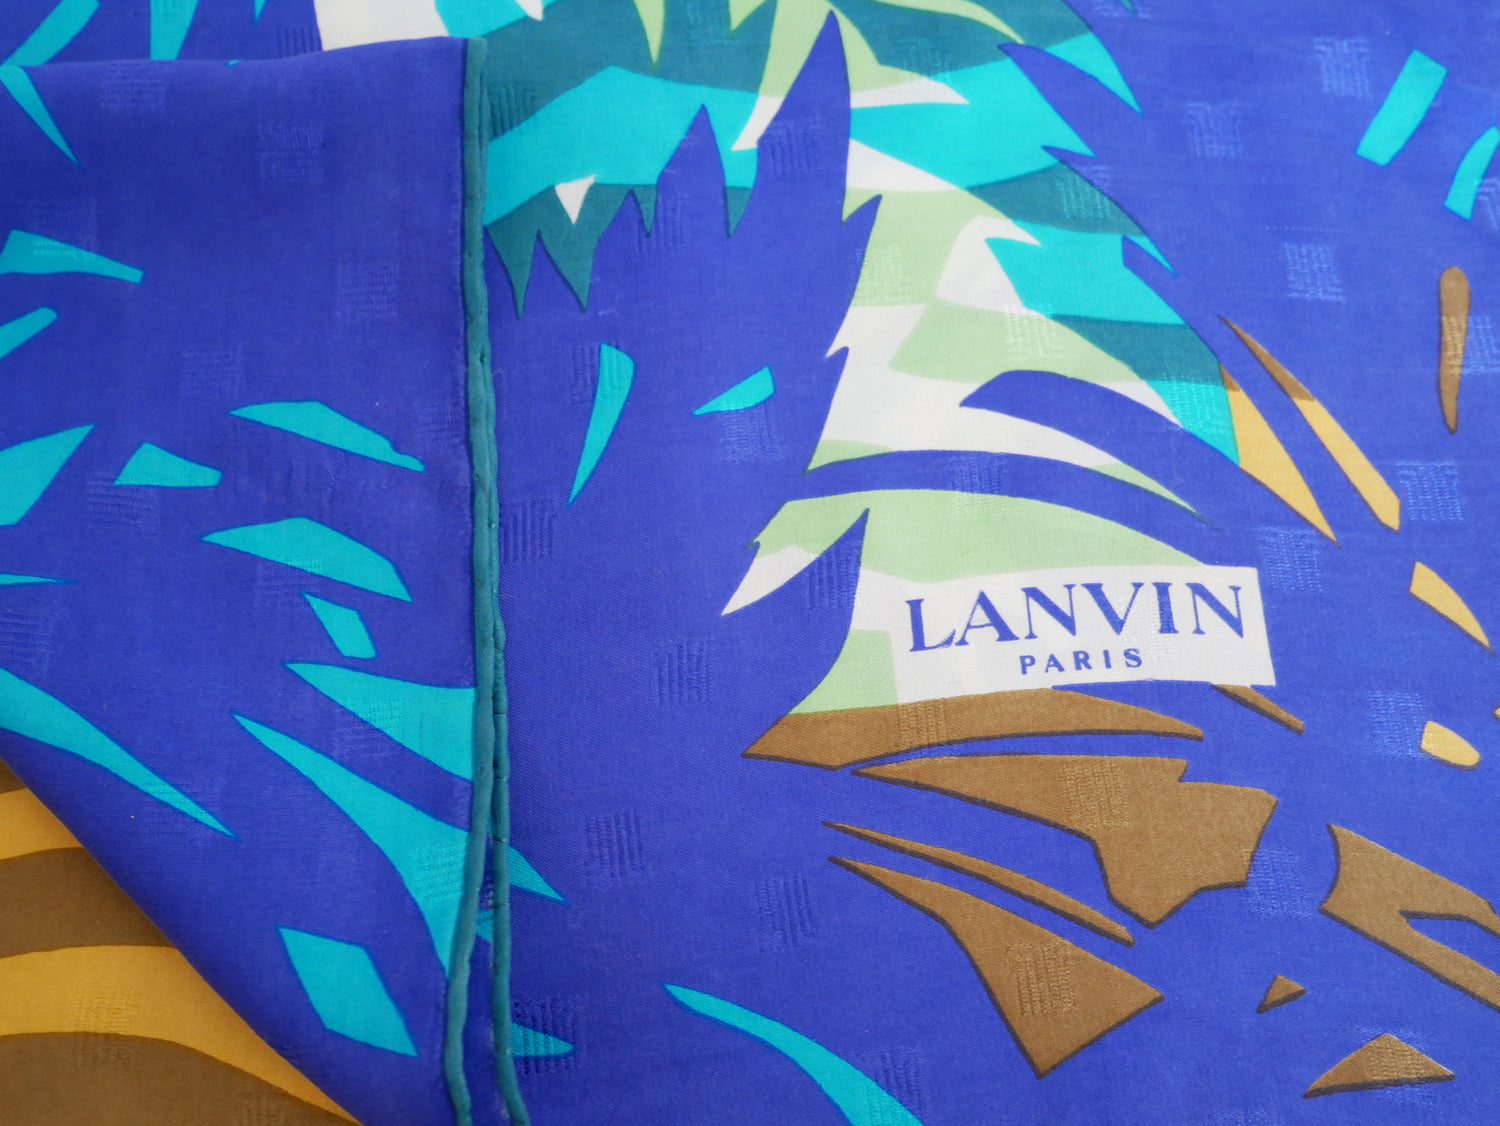 LANVIN Scarves vintage Lysis Paris pre-owned secondhand